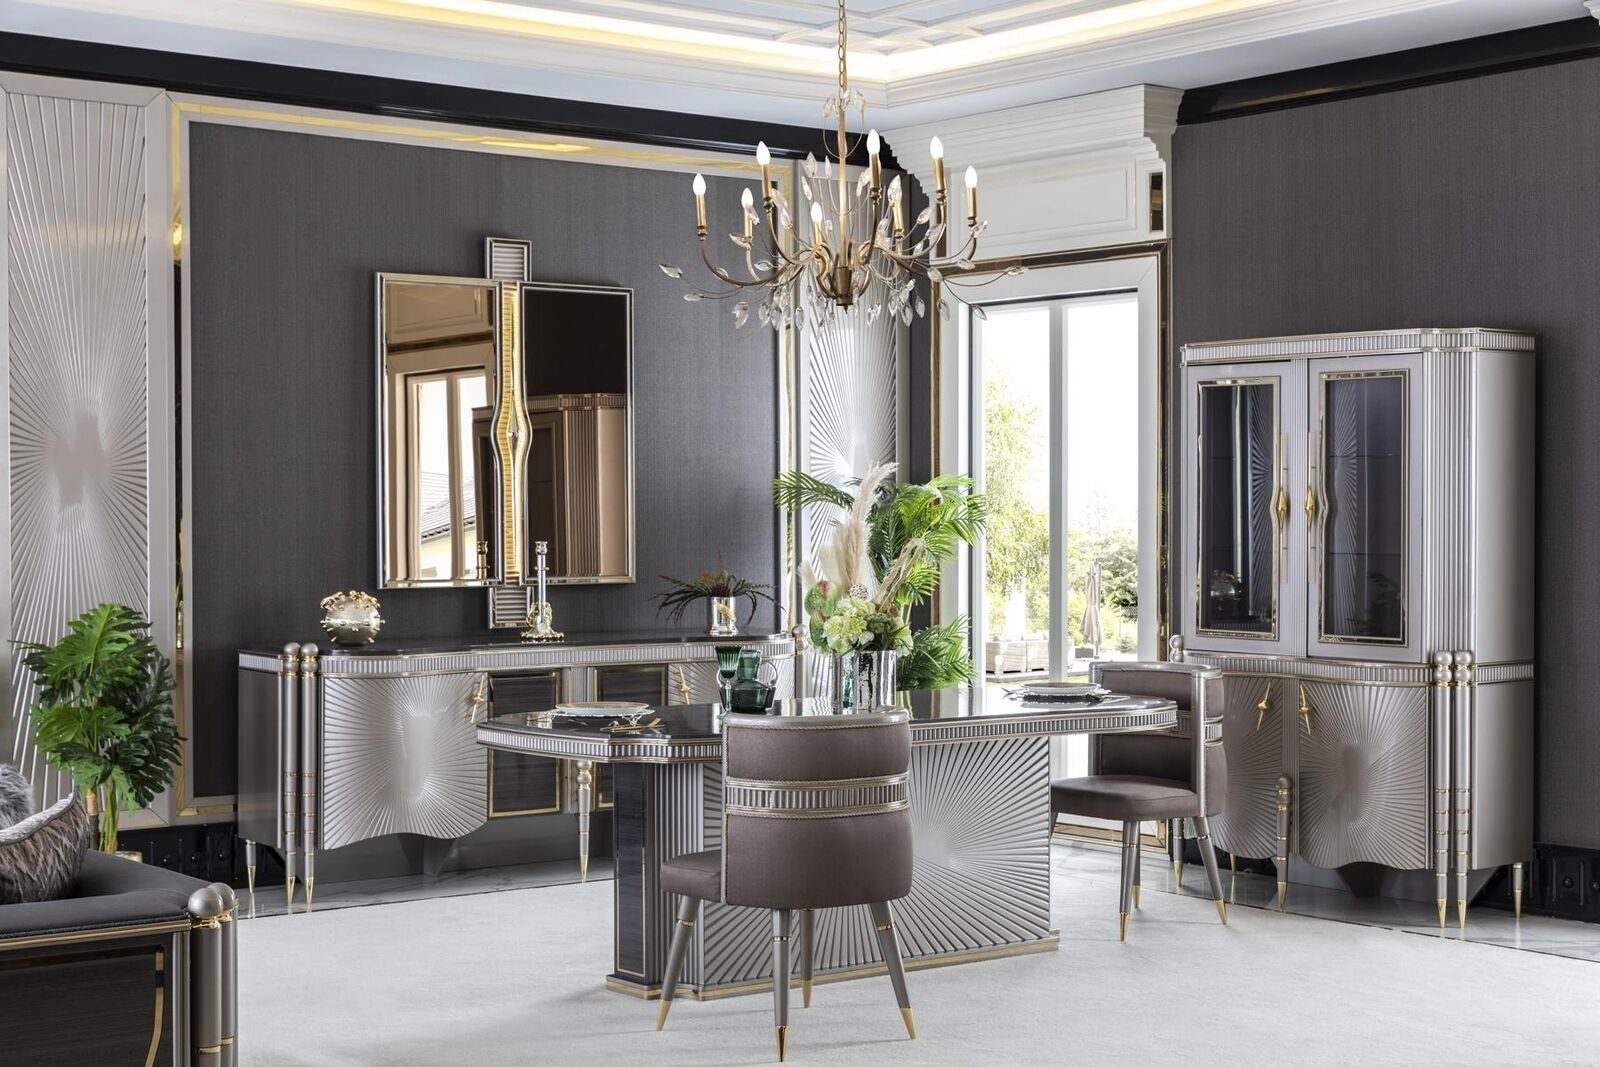 Kaufen Sie Luxuriöses elegantes Möbelkissen-Set mit